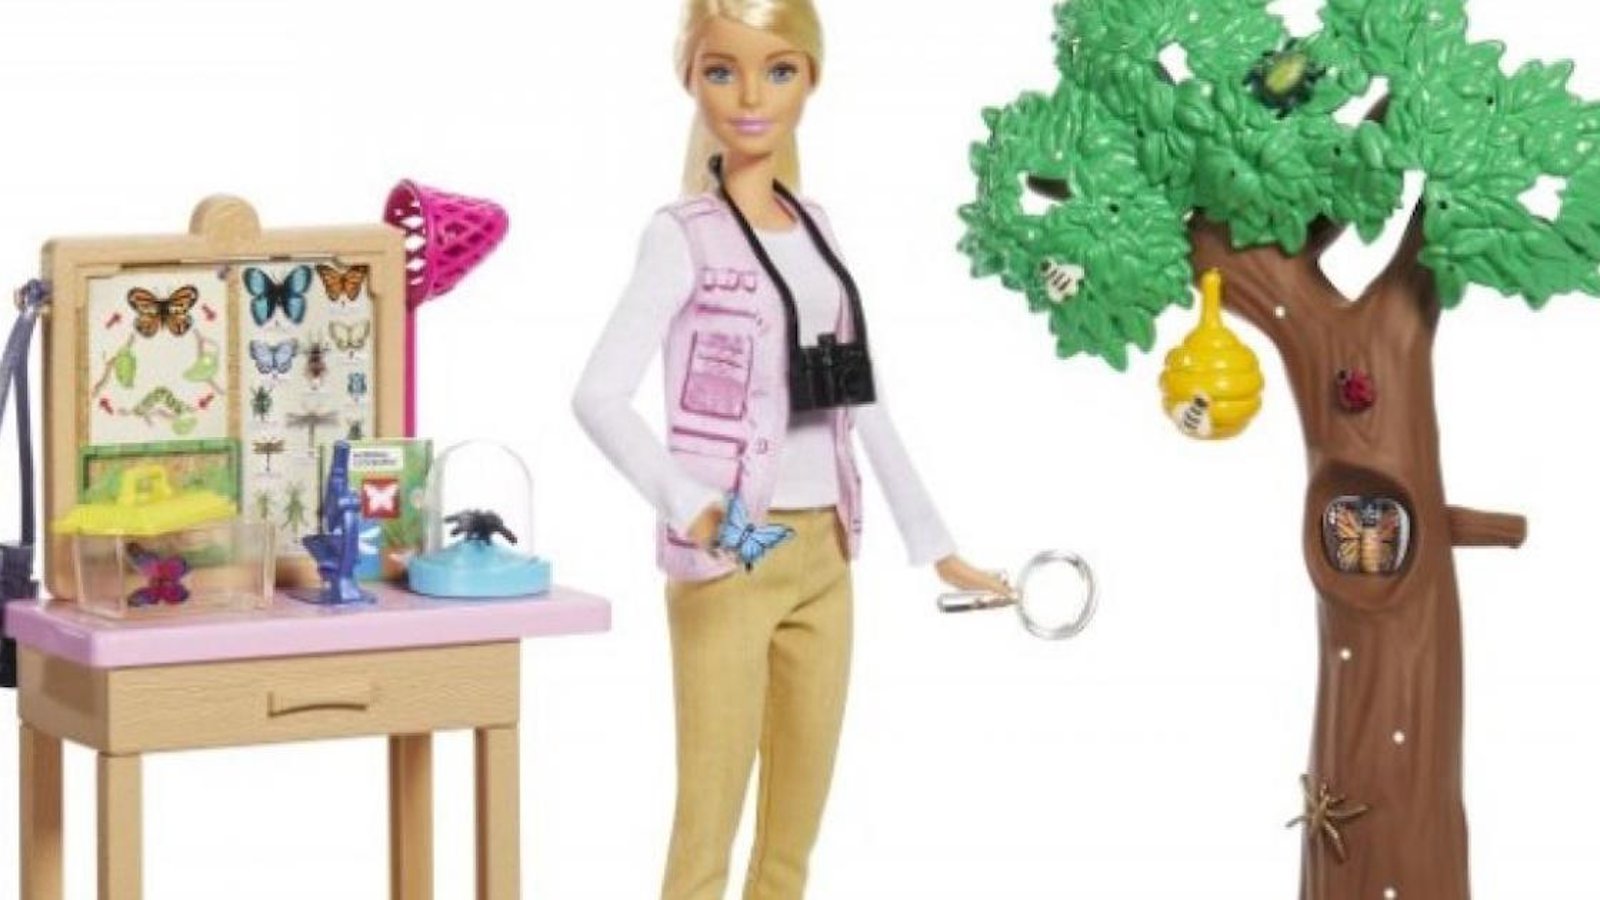 Cette année, Barbie se lance dans des carrières scientifiques